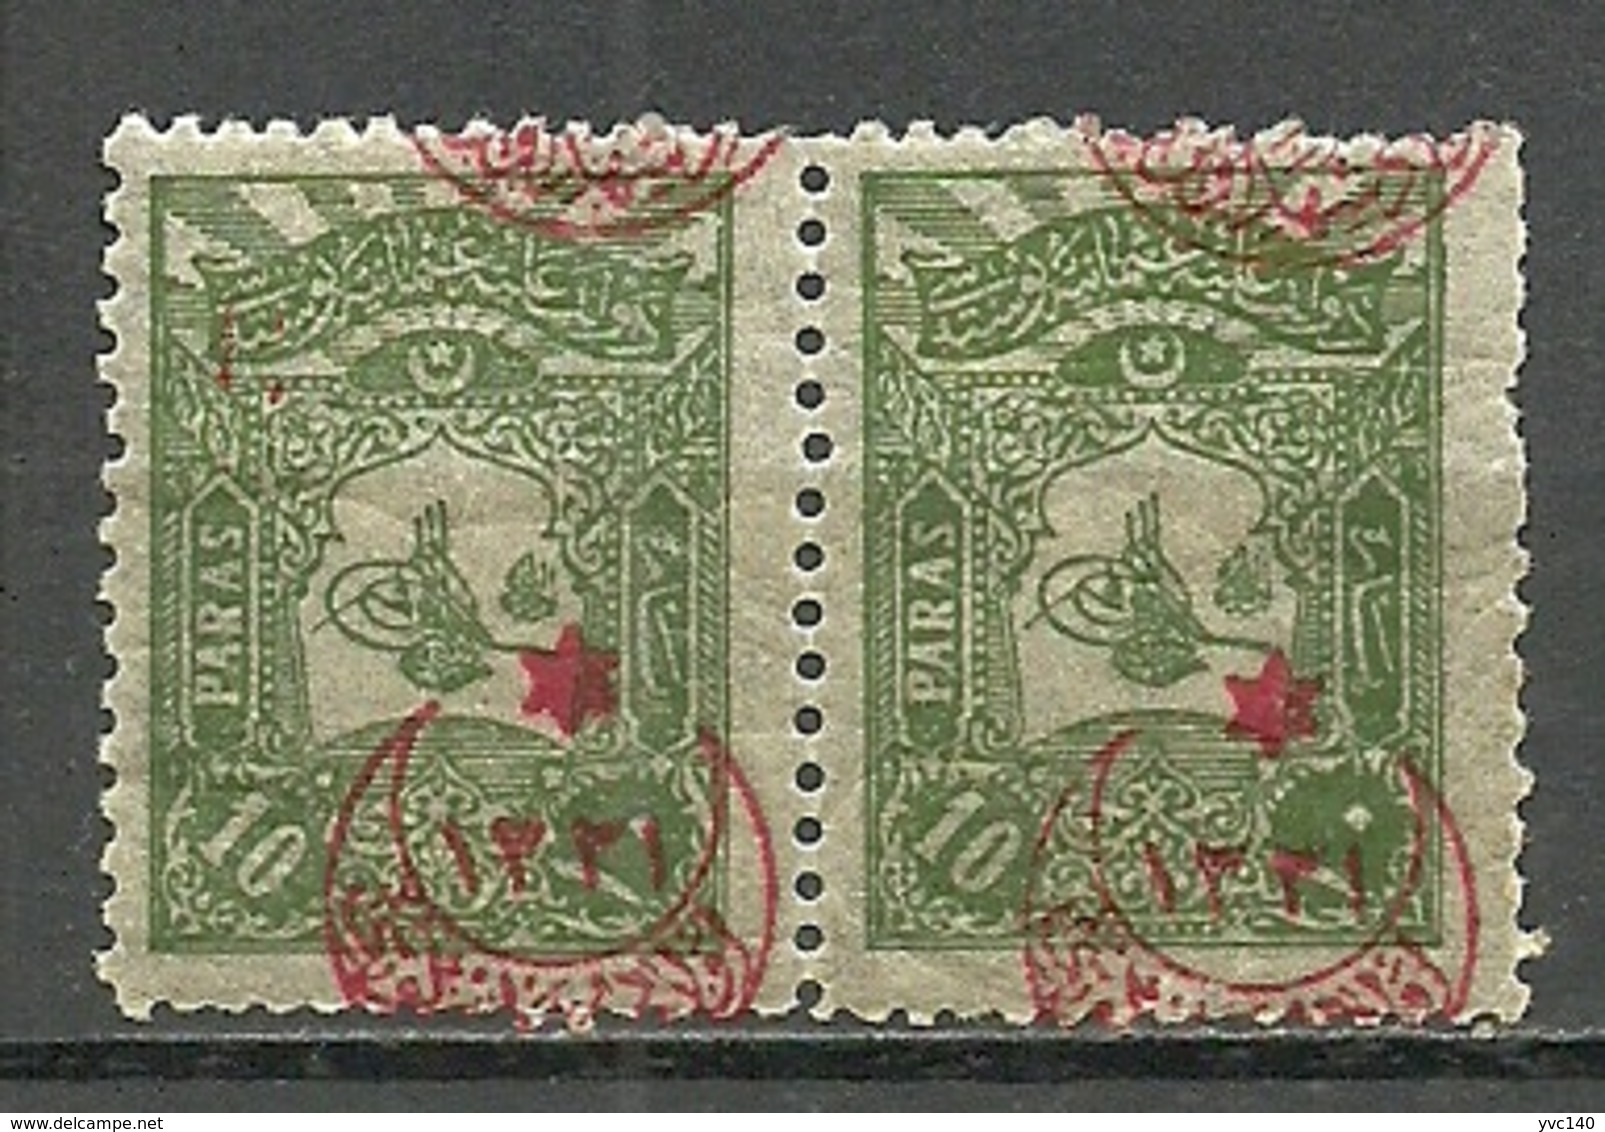 Turkey; 1915 Overprinted War Issue Stamp 10 P. ERROR "Misplaced Overprint" - Ongebruikt